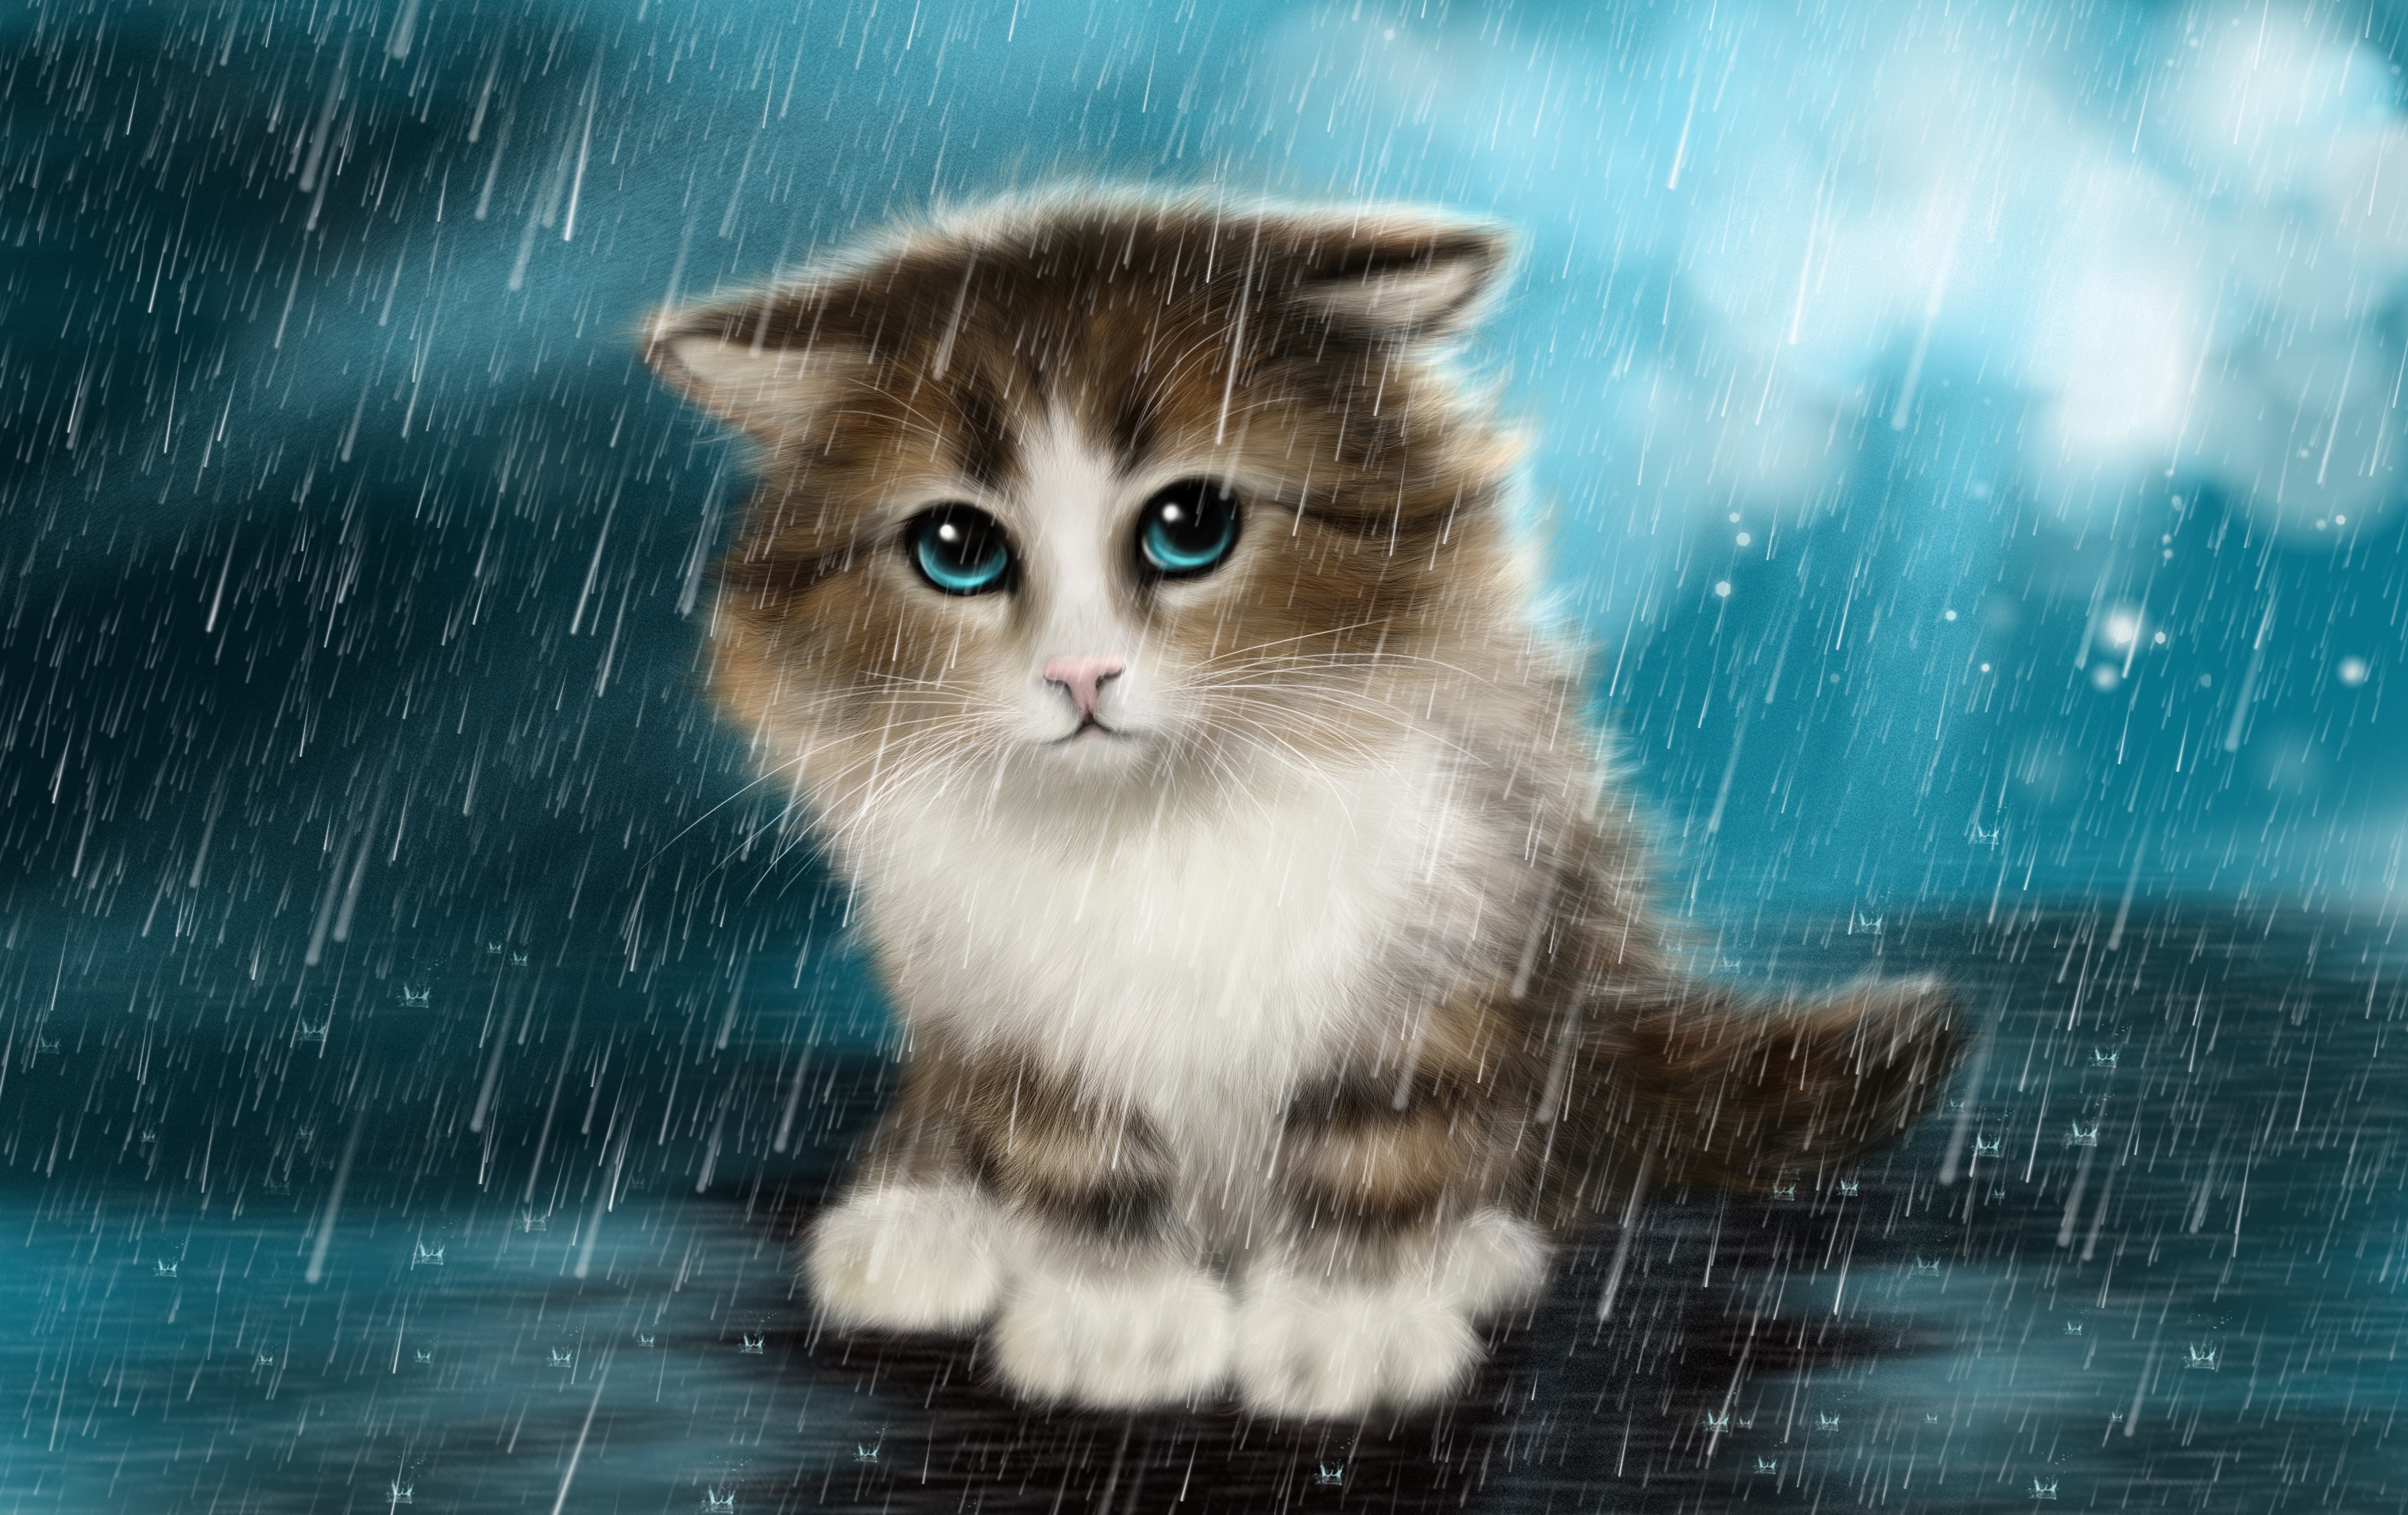 Descarga gratuita de fondo de pantalla para móvil de Animales, Gatos, Lluvia, Gato, Gatito, Pintura, Ojos Azules.